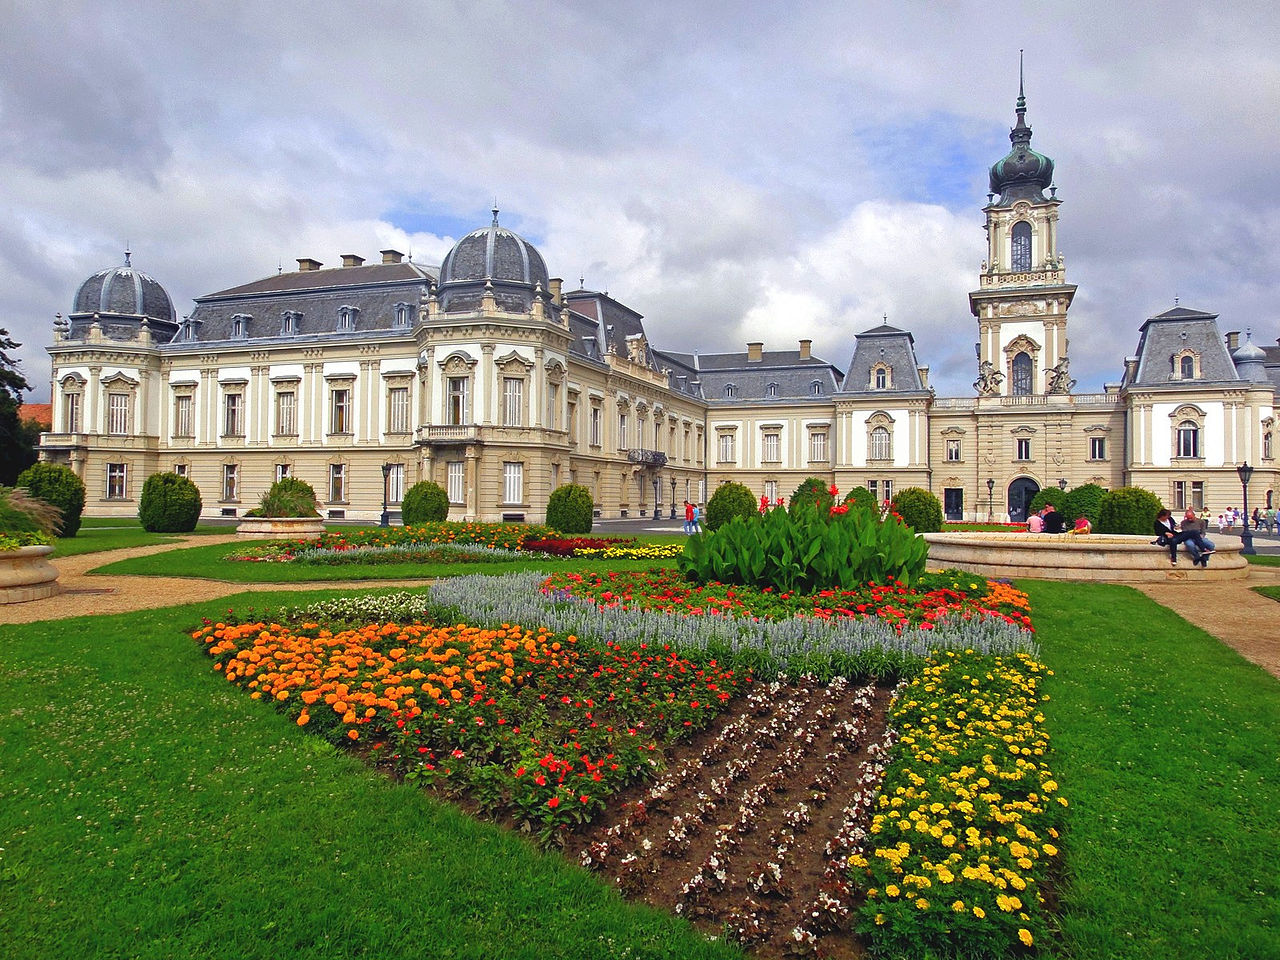 Festetics Castle, building, Keszthely, Hungary, castle, castle garden